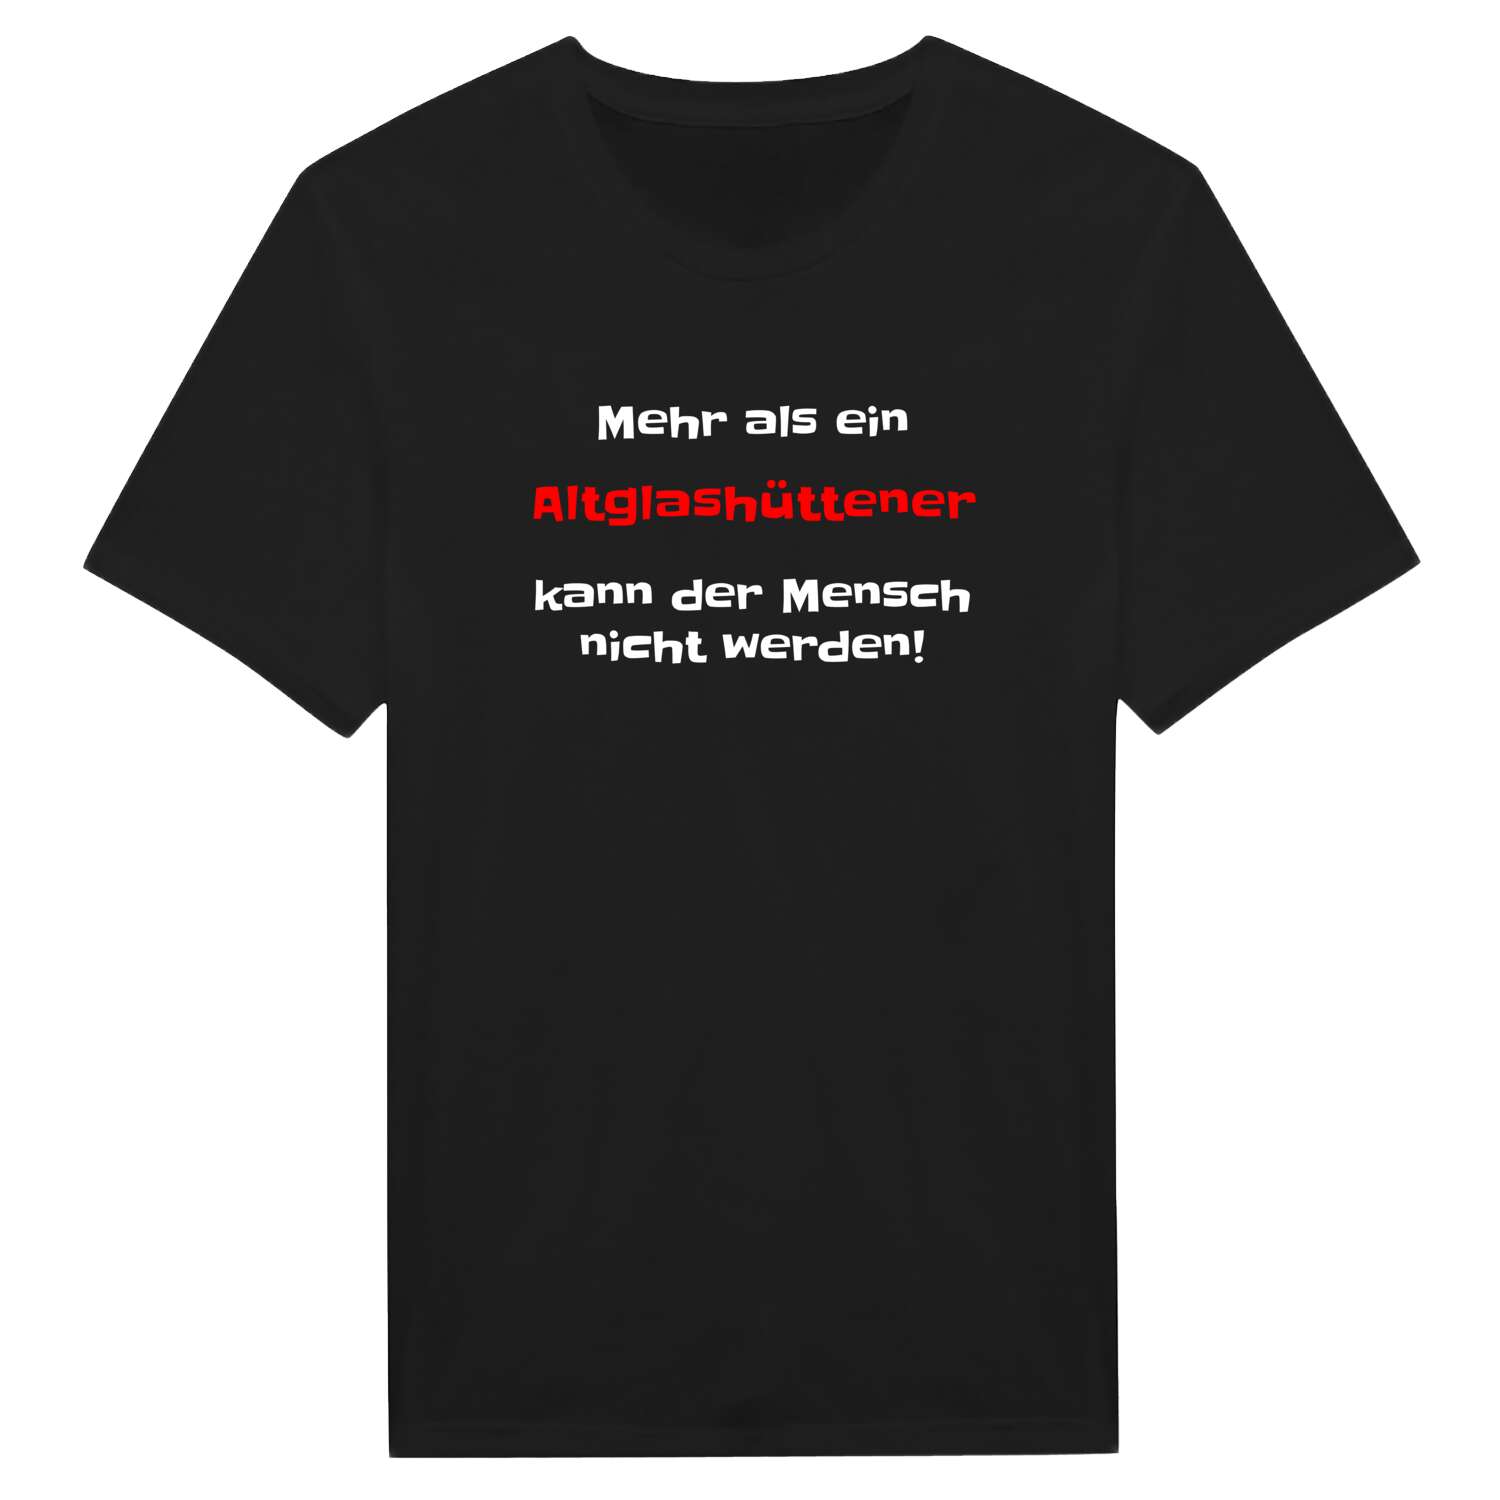 Altglashütten T-Shirt »Mehr als ein«